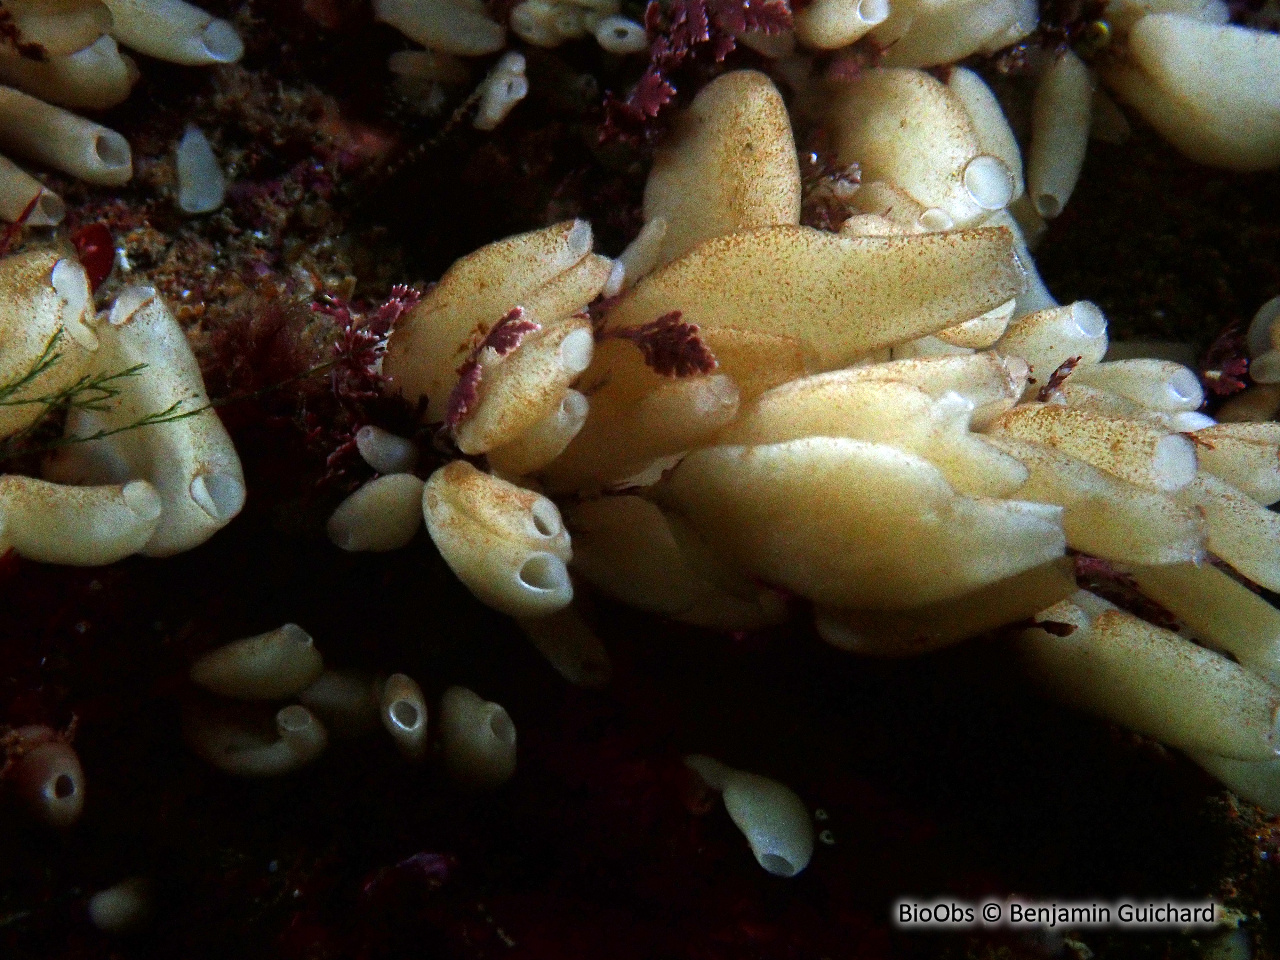 Eponge petite bourse aplatie - Grantia compressa - Benjamin Guichard - BioObs